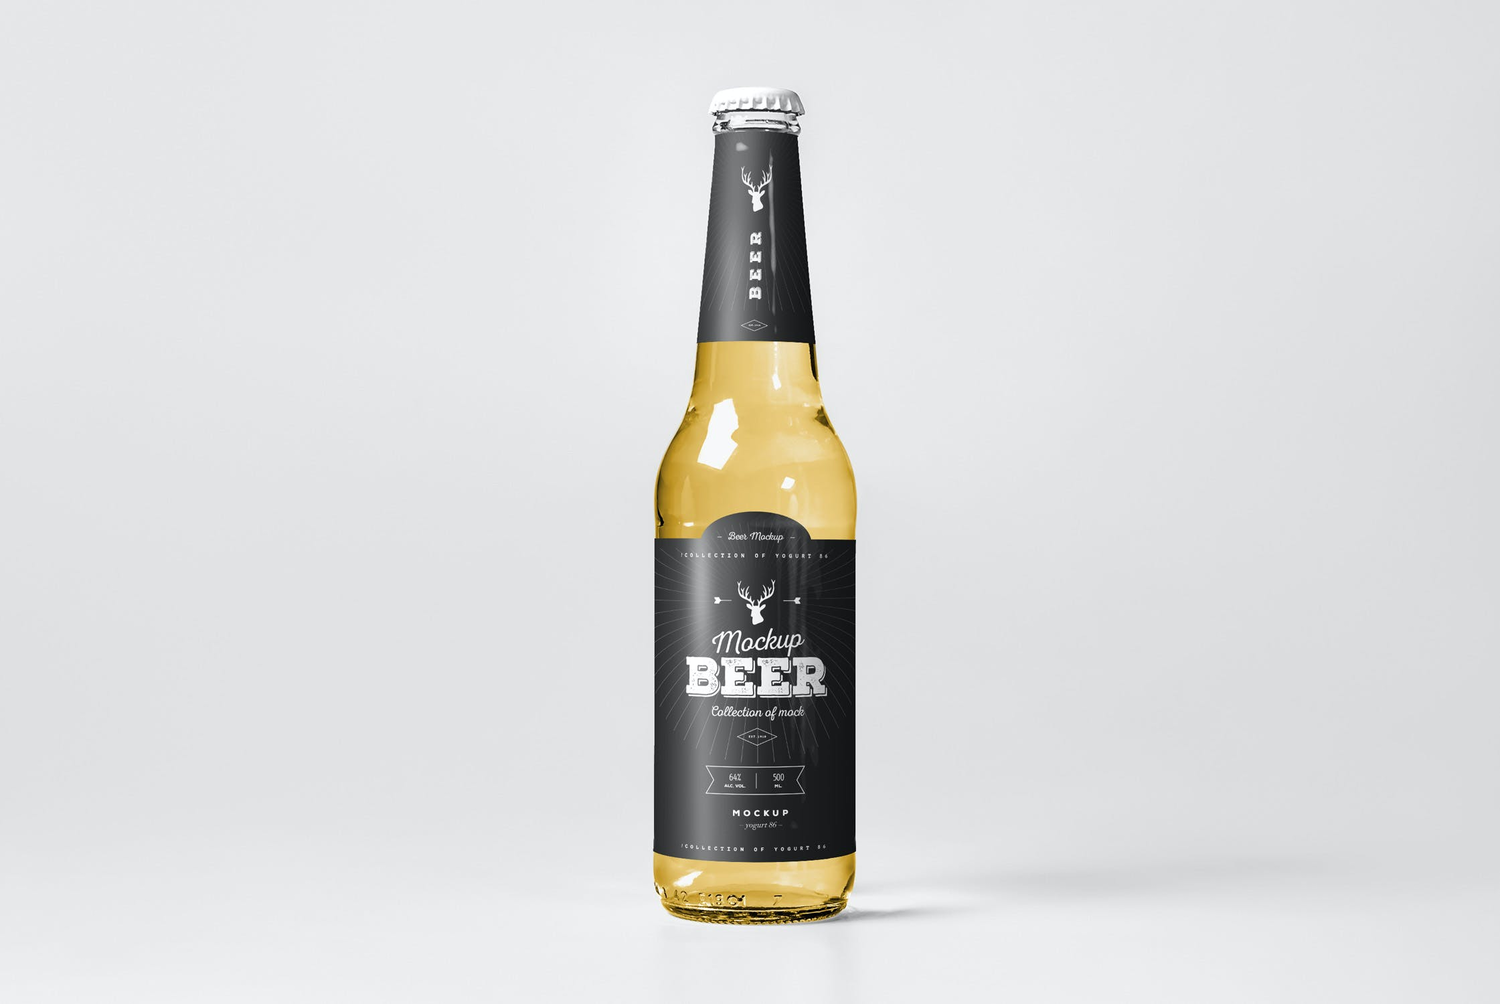 4706 8款啤酒酒标组合包装多角度设计作品空白贴图ps样机素材设计模板 Beer Mock-up 5@GOOODME.COM